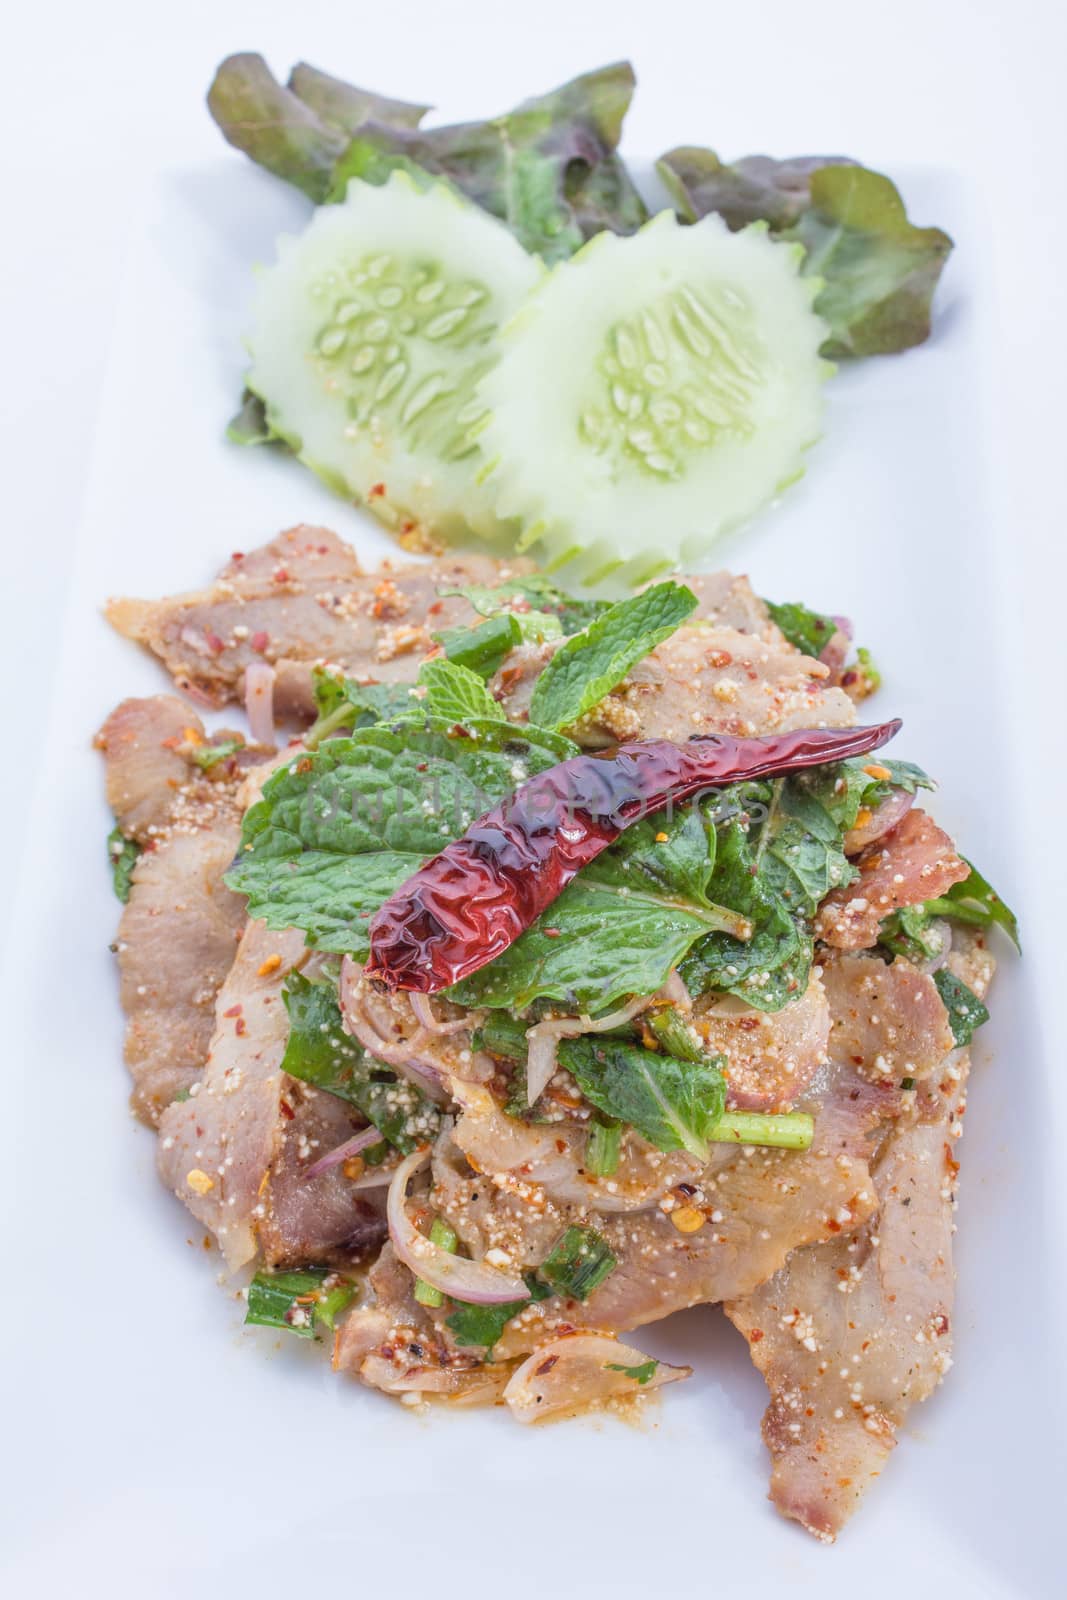 Spicy pork is food thailand